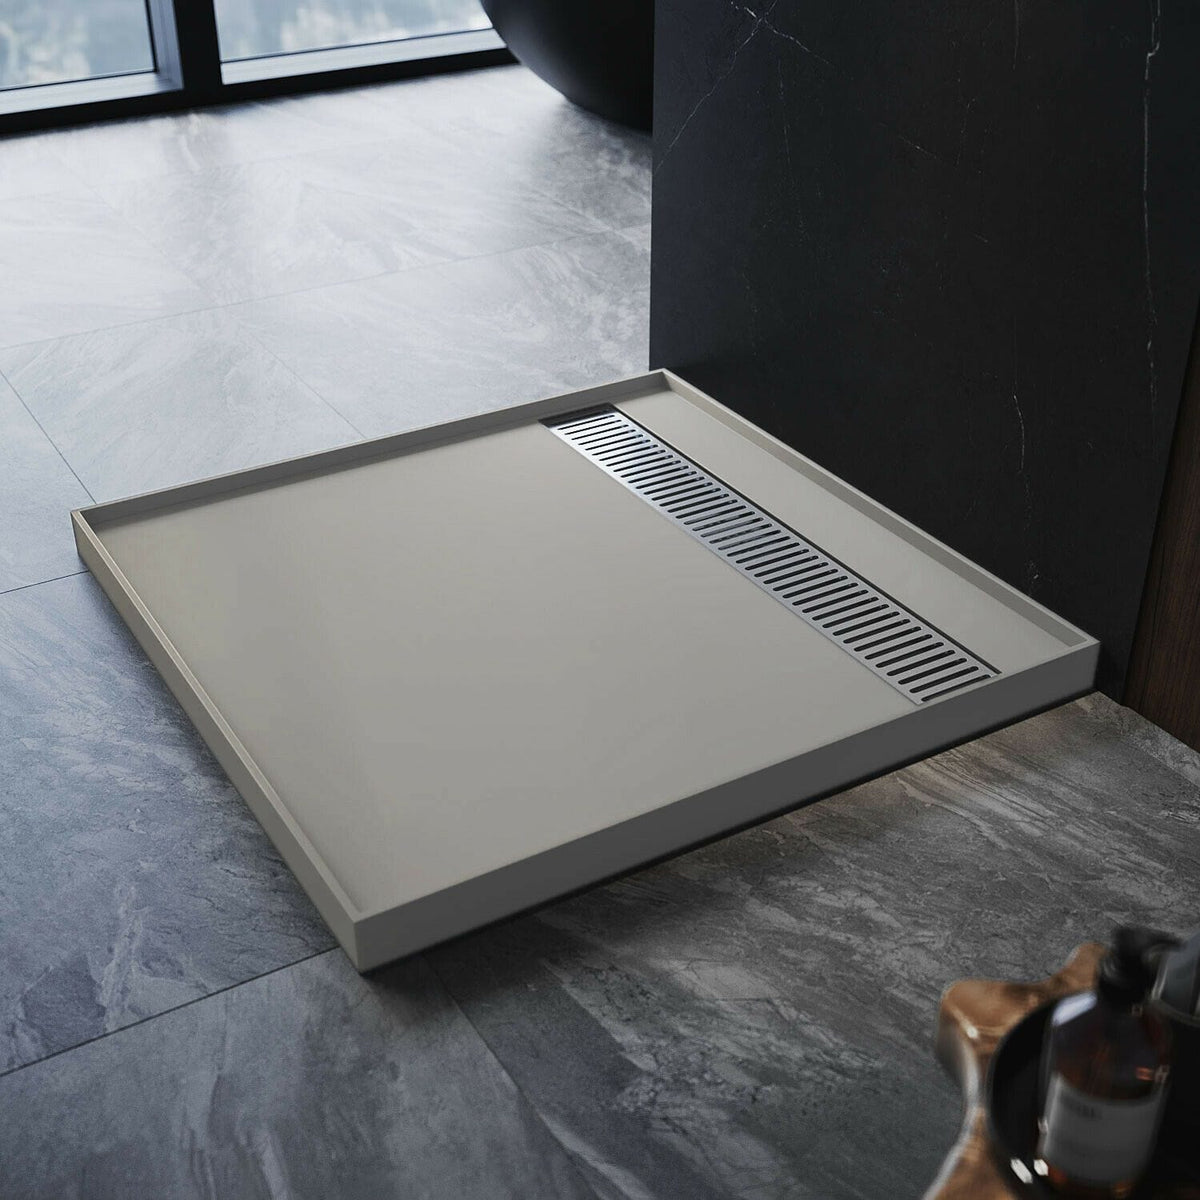 ELEGANT 900x900x40mm Tile Tray Square Durable SMC Shower Base Tile Over DIY - Elegantshowers